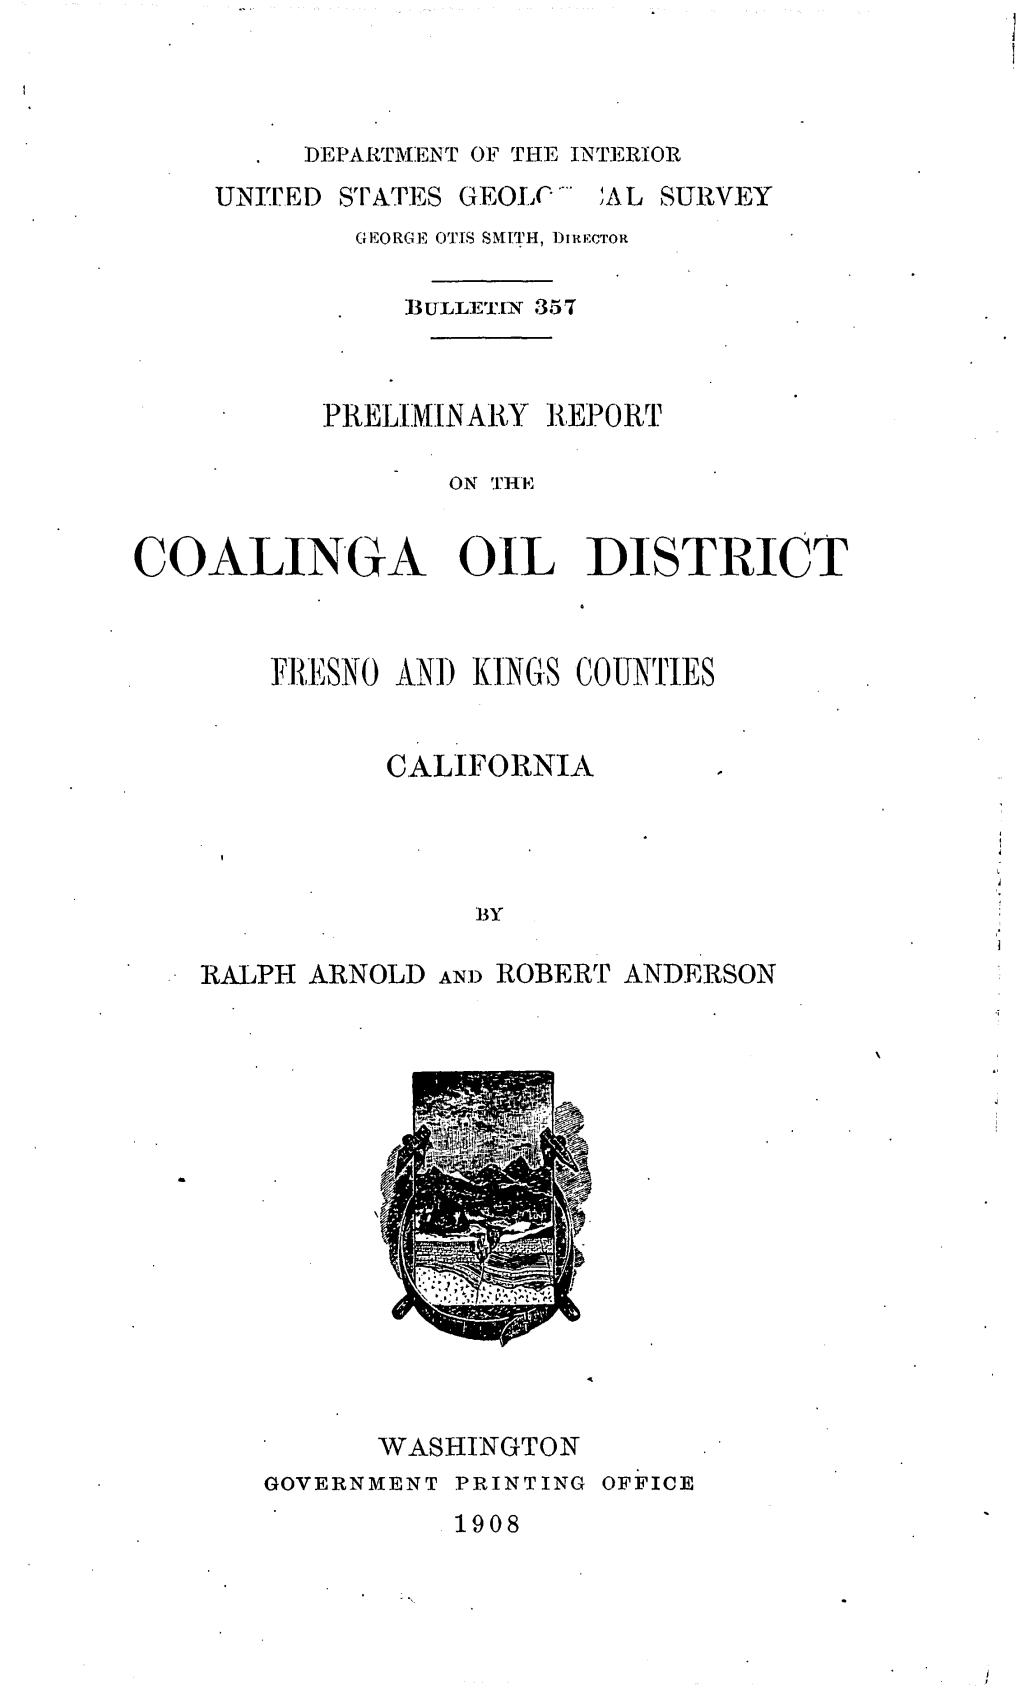 Coalinga Oil District